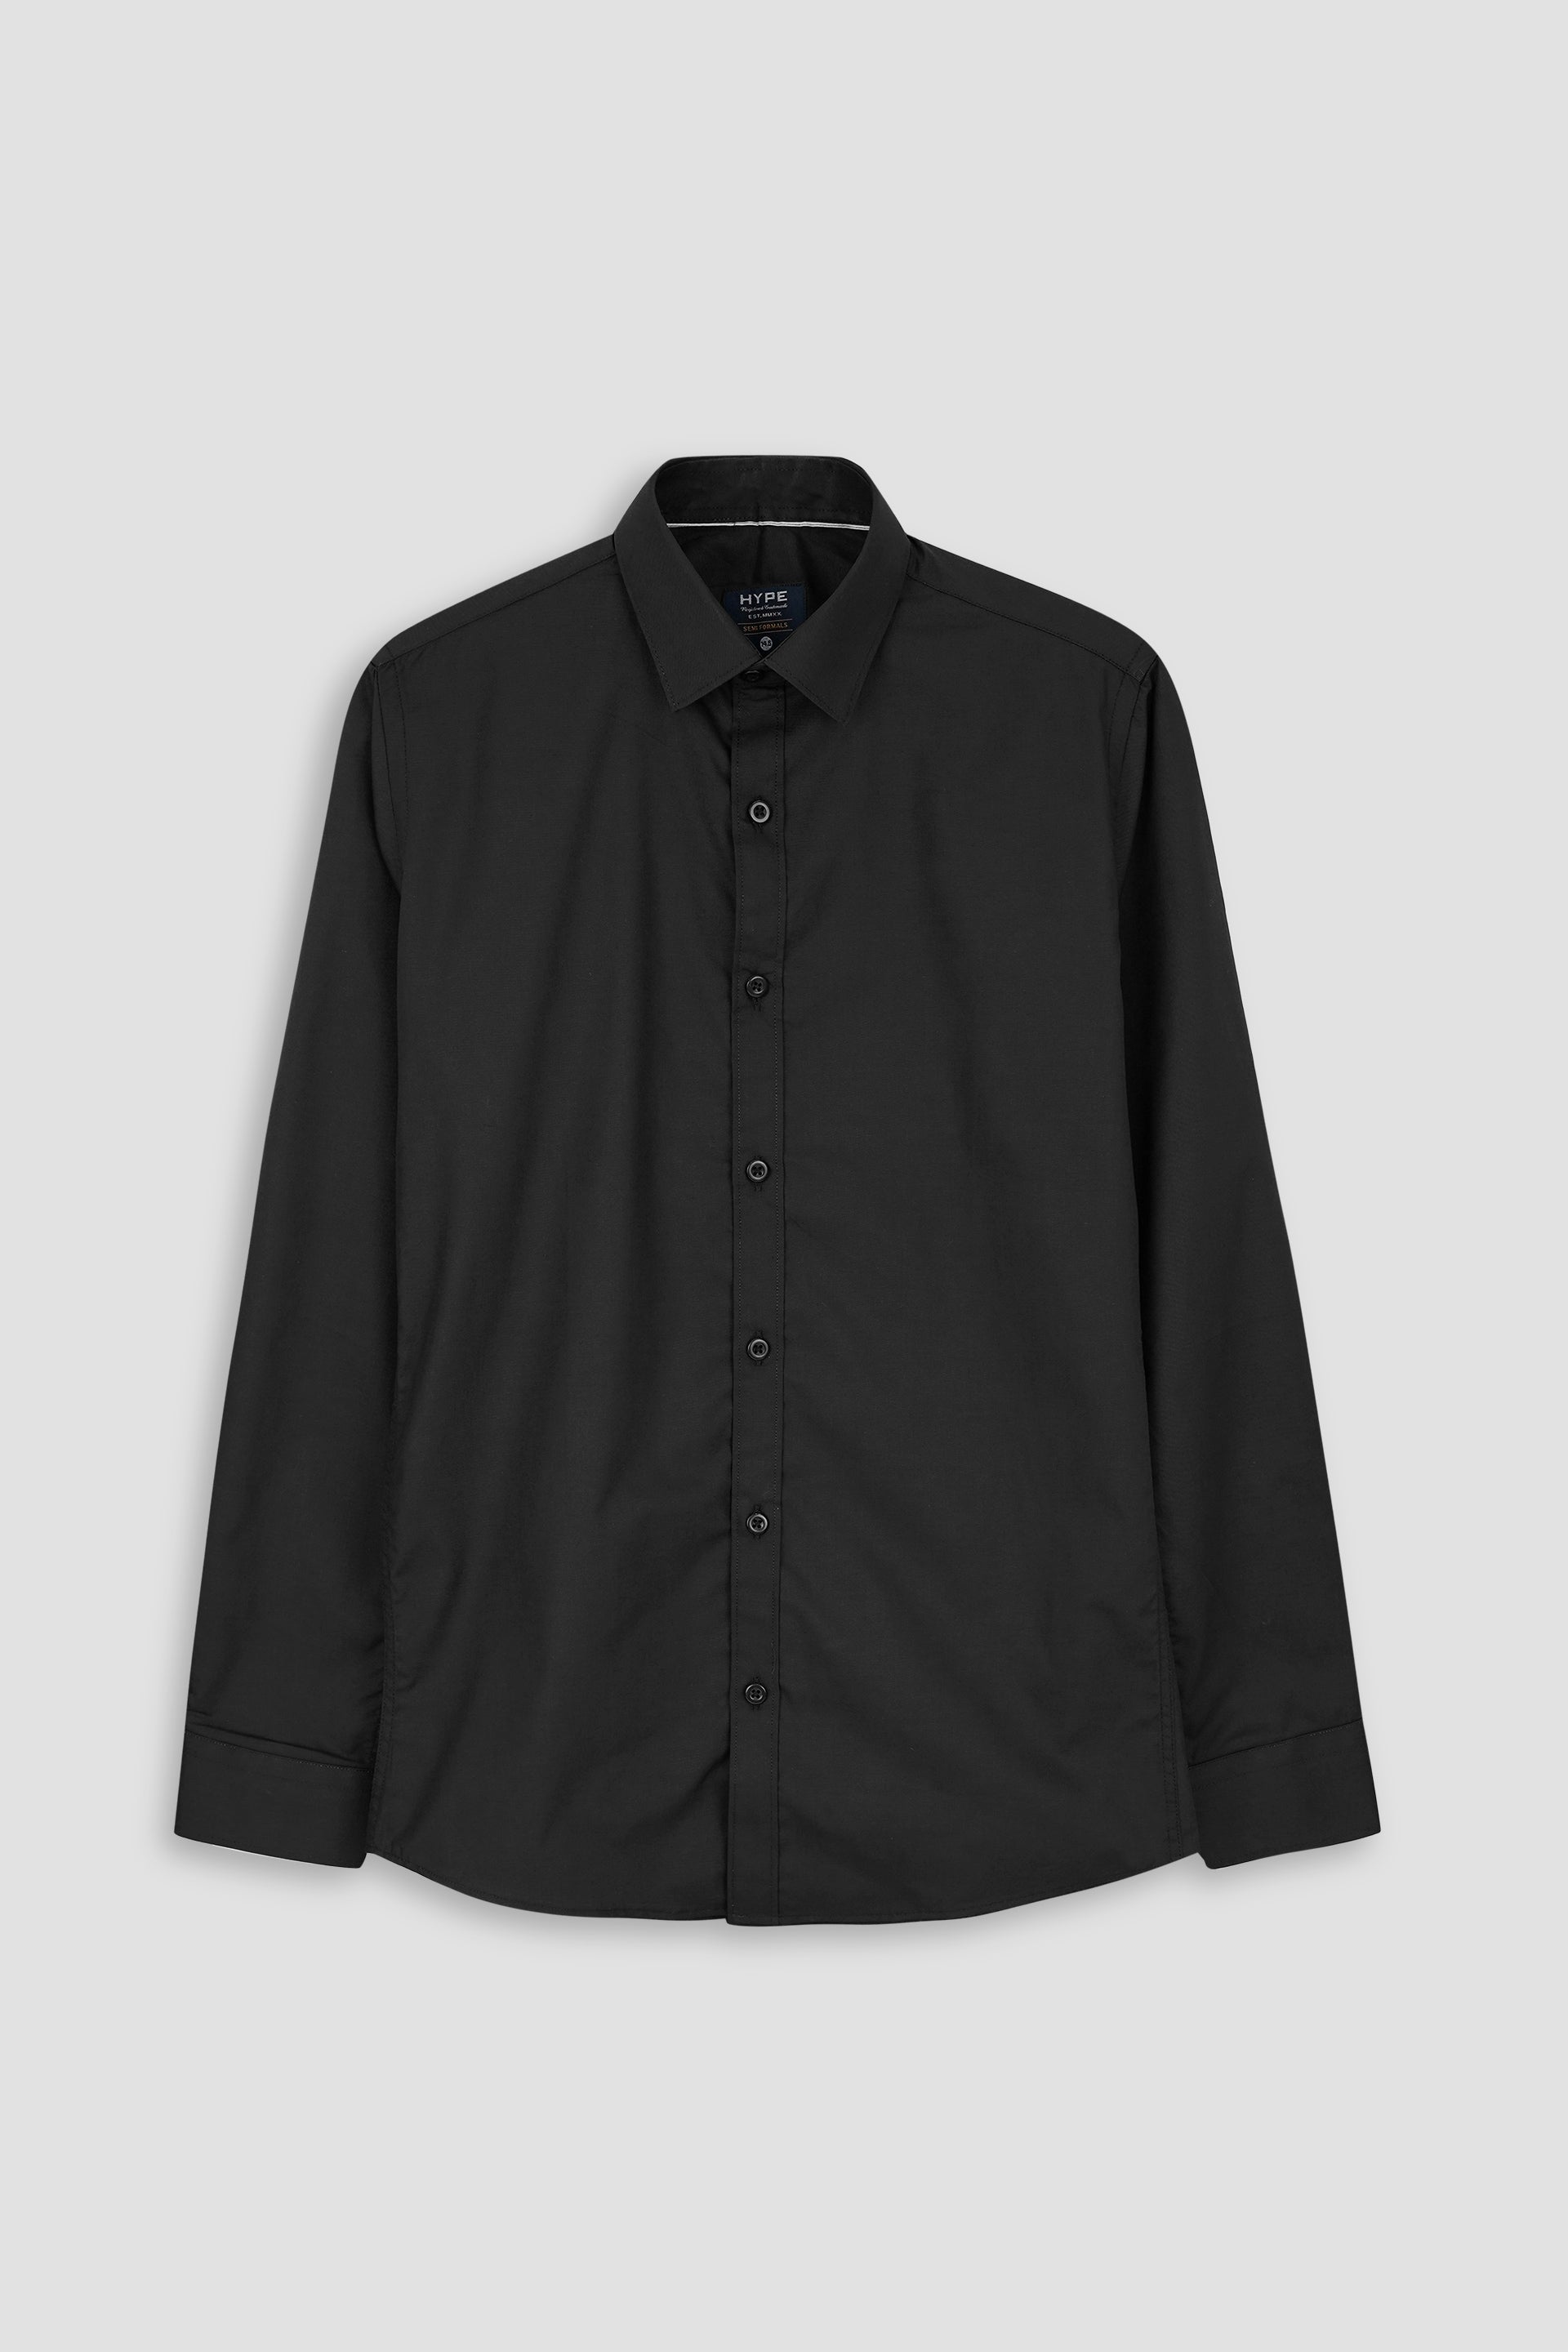 Men Soft Cotton Black Casual Shirt 002510